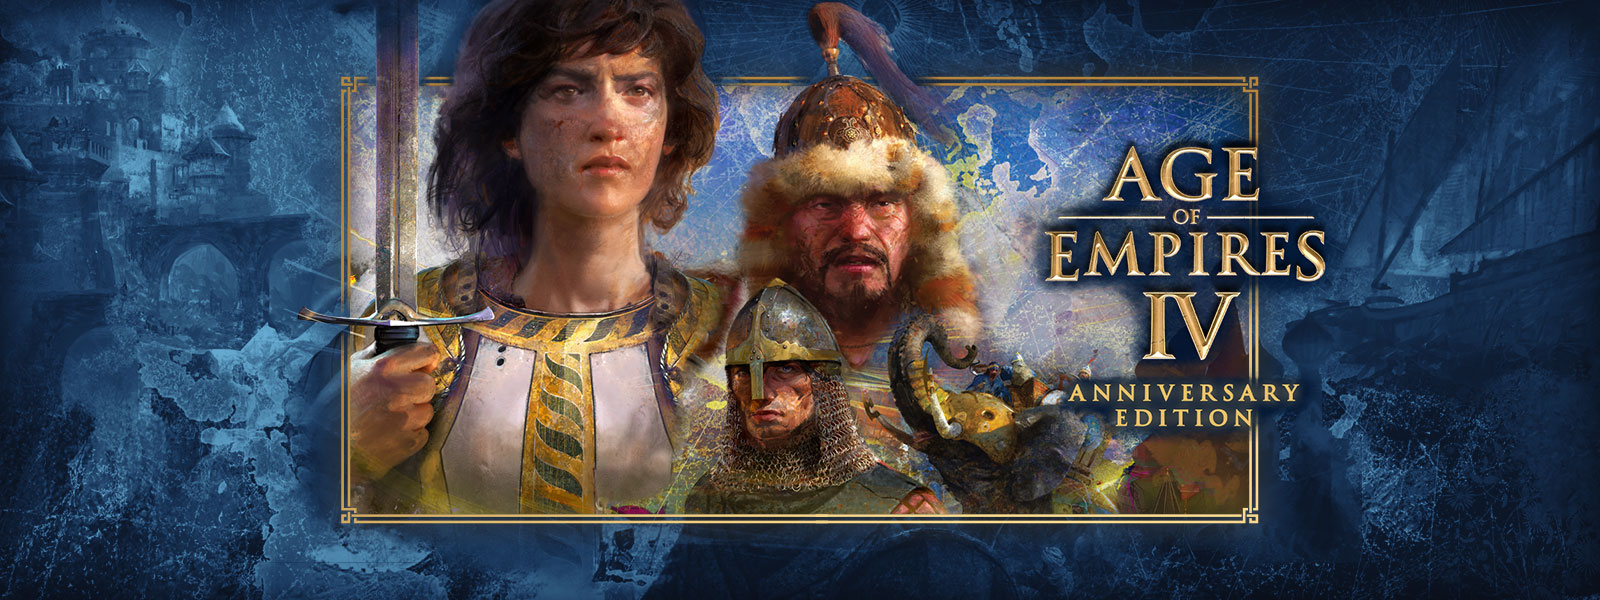 Age of Empires IV: Anniversary Edition Tre karakterer med krigsscener og pansrede elefanter omkring sig.